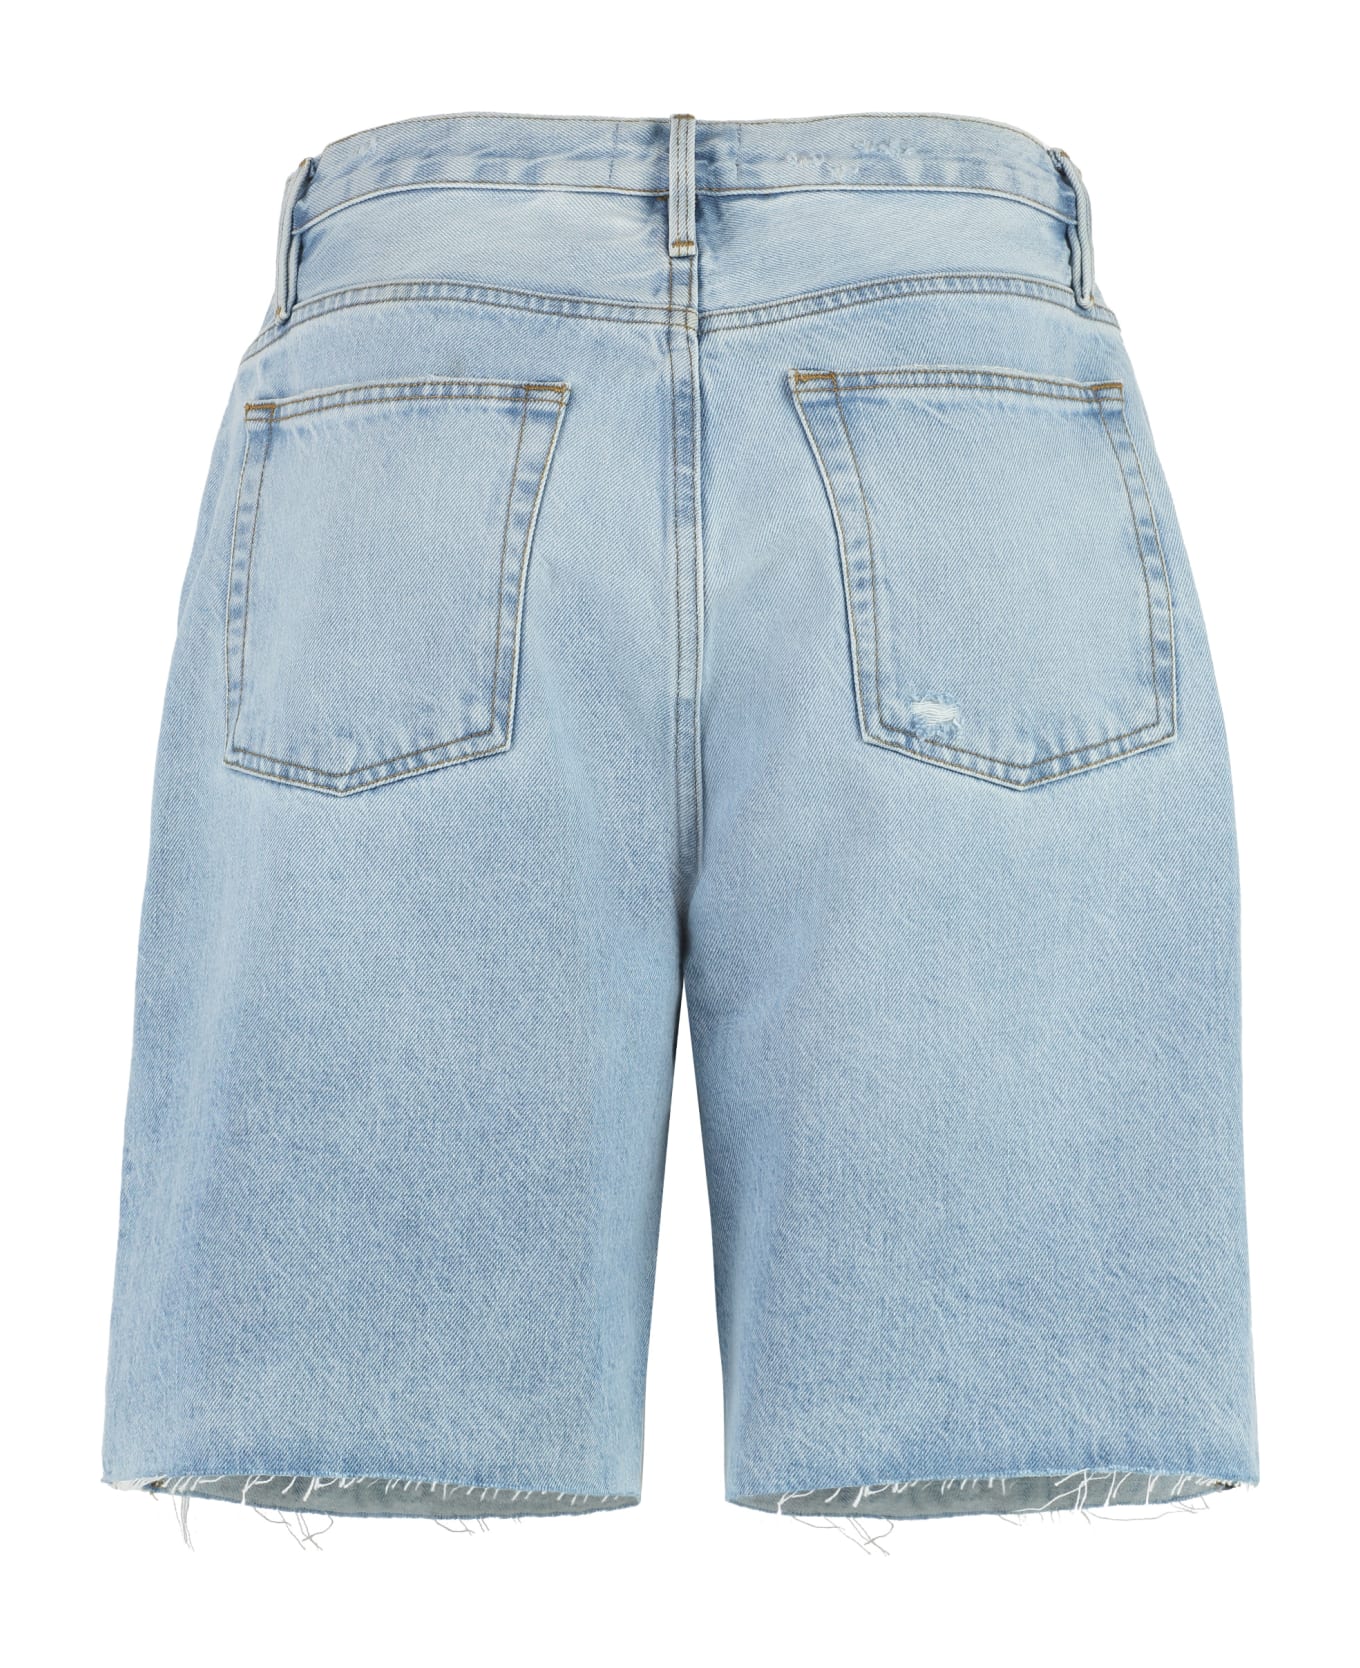 Frame Denim Shorts - Rssm Jeans